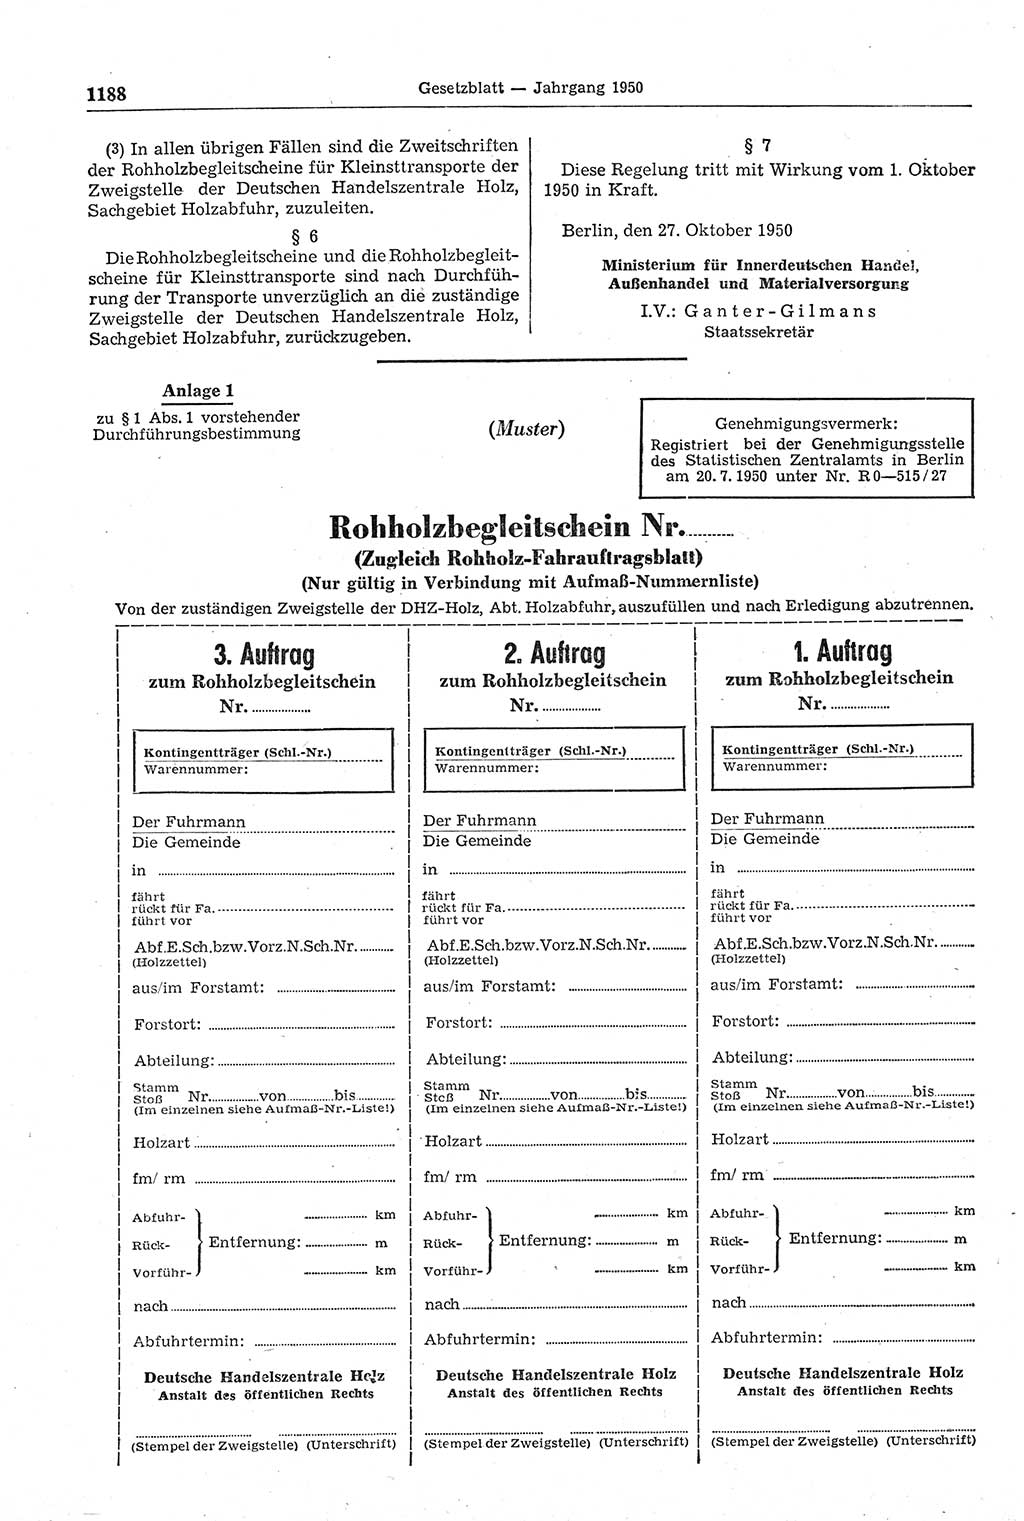 Gesetzblatt (GBl.) der Deutschen Demokratischen Republik (DDR) 1950, Seite 1188 (GBl. DDR 1950, S. 1188)